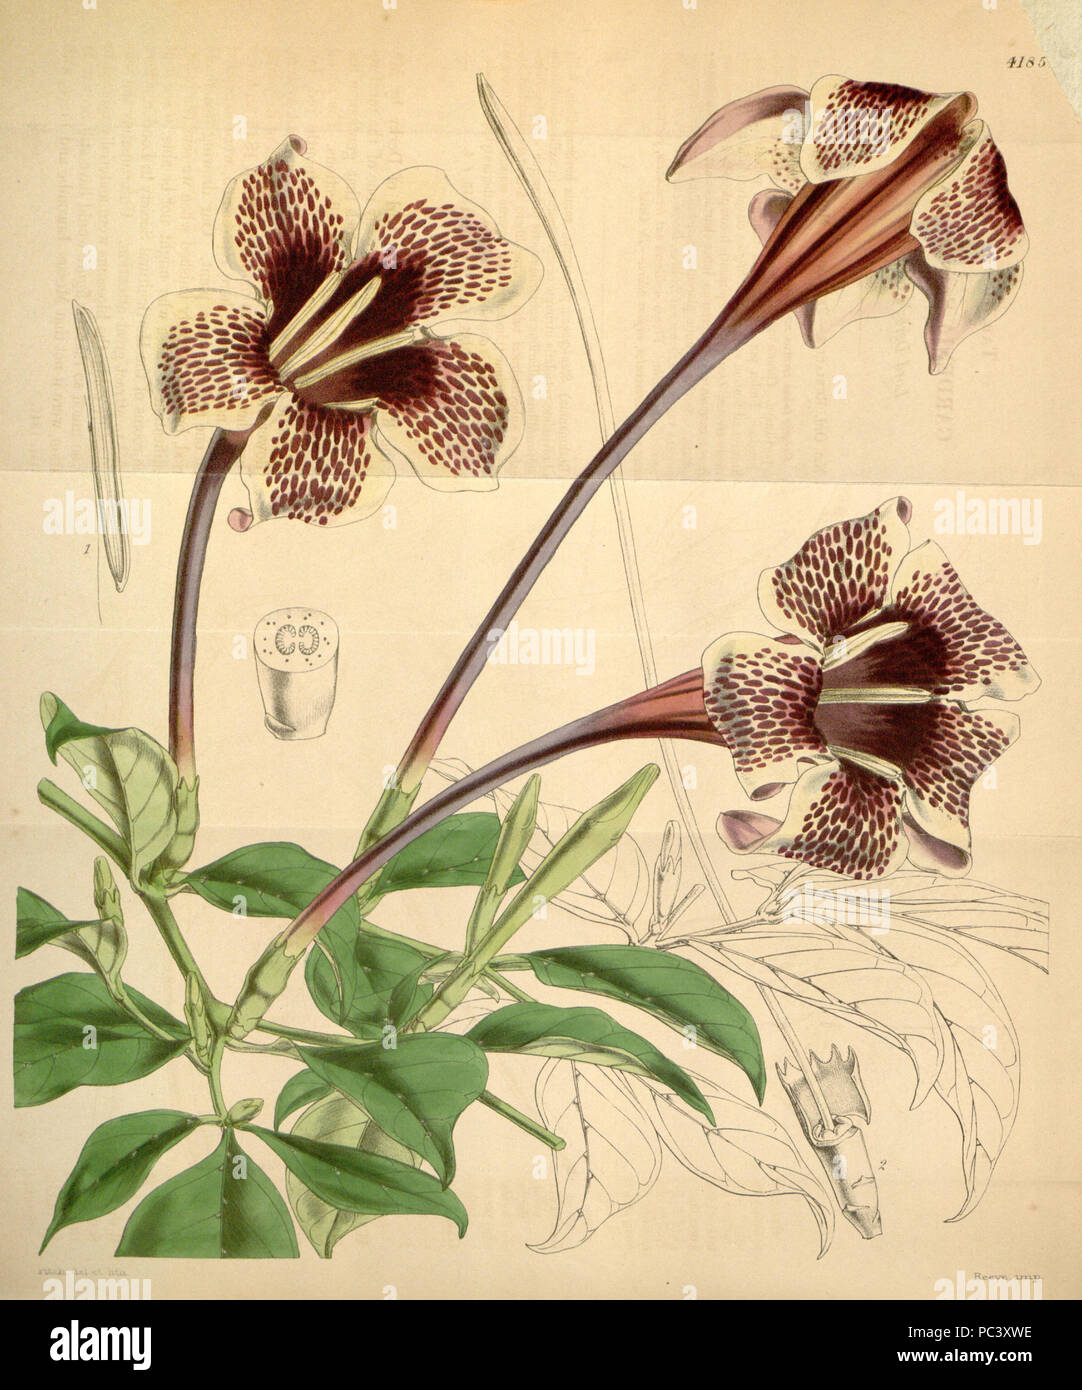 529 Rothmannia longiflora Bot. Mag. 71. 4185. 1845 Stock Photo